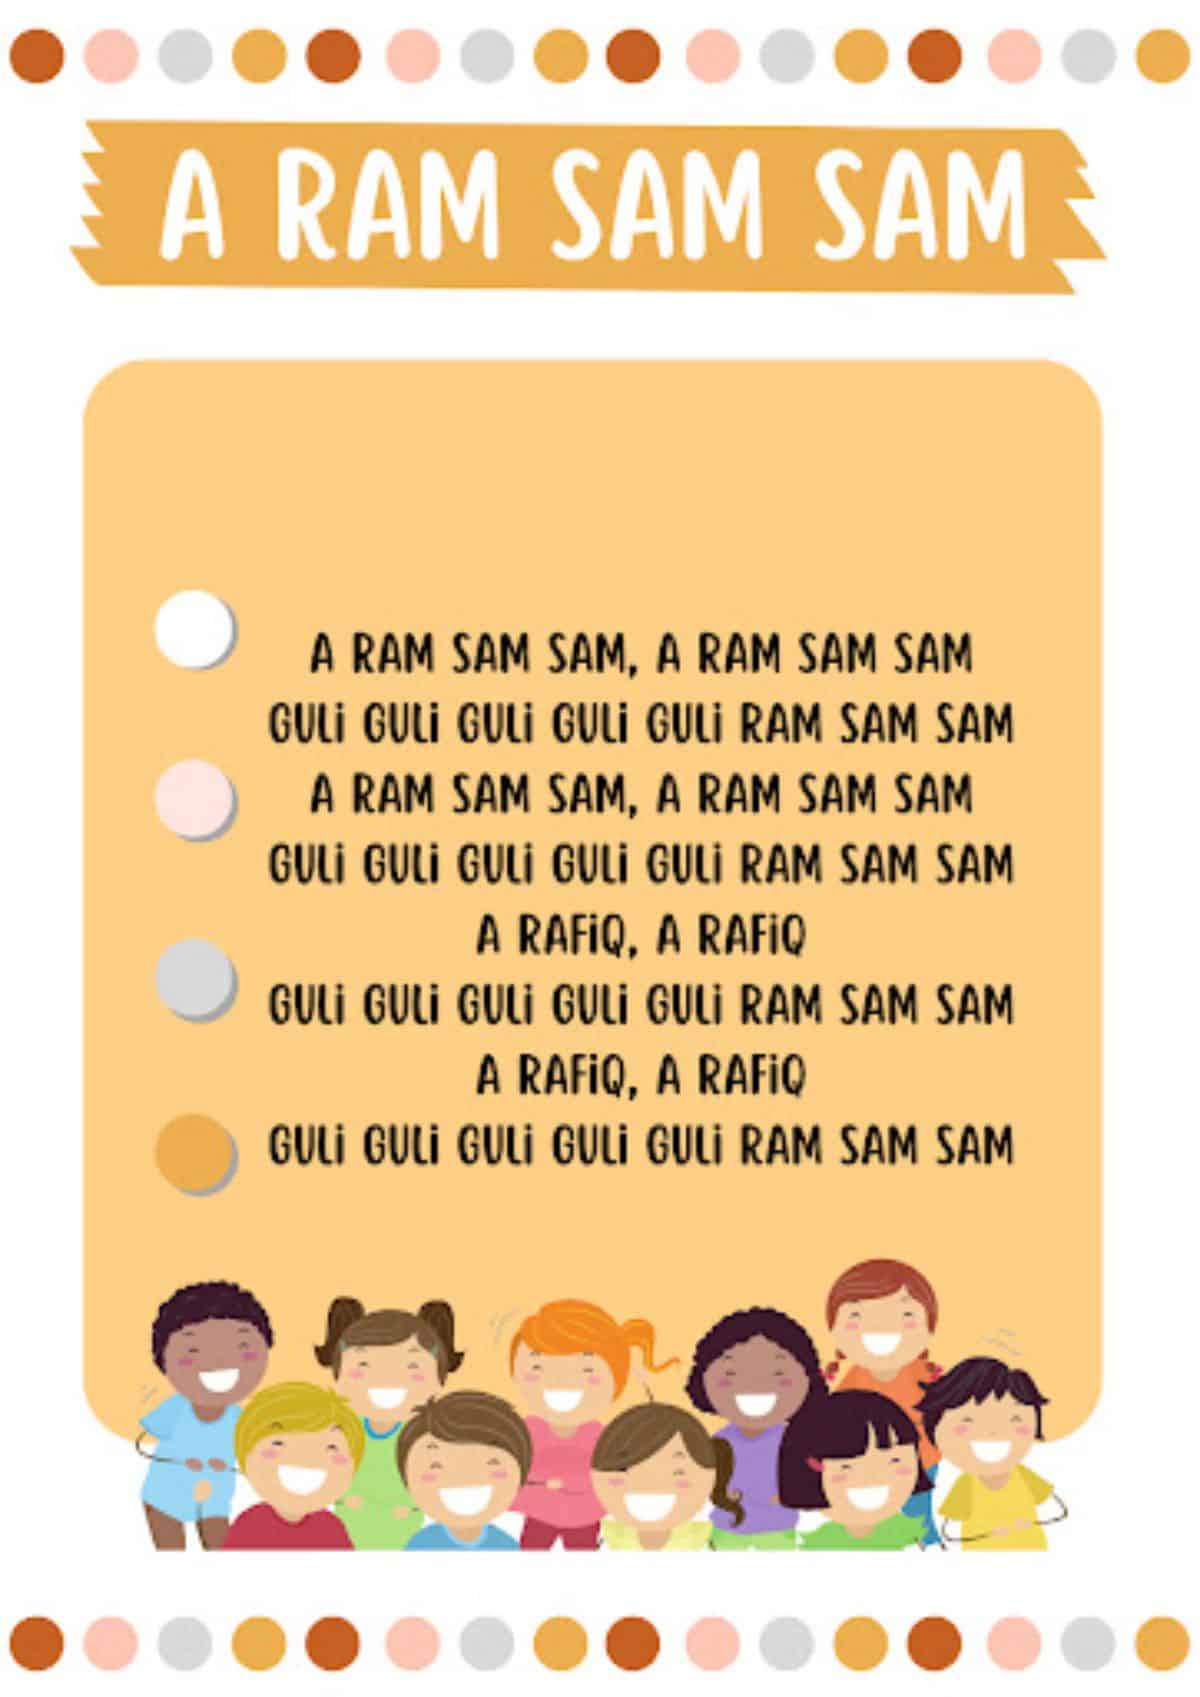 A Ram Ram Sam Sam Photo lyrics